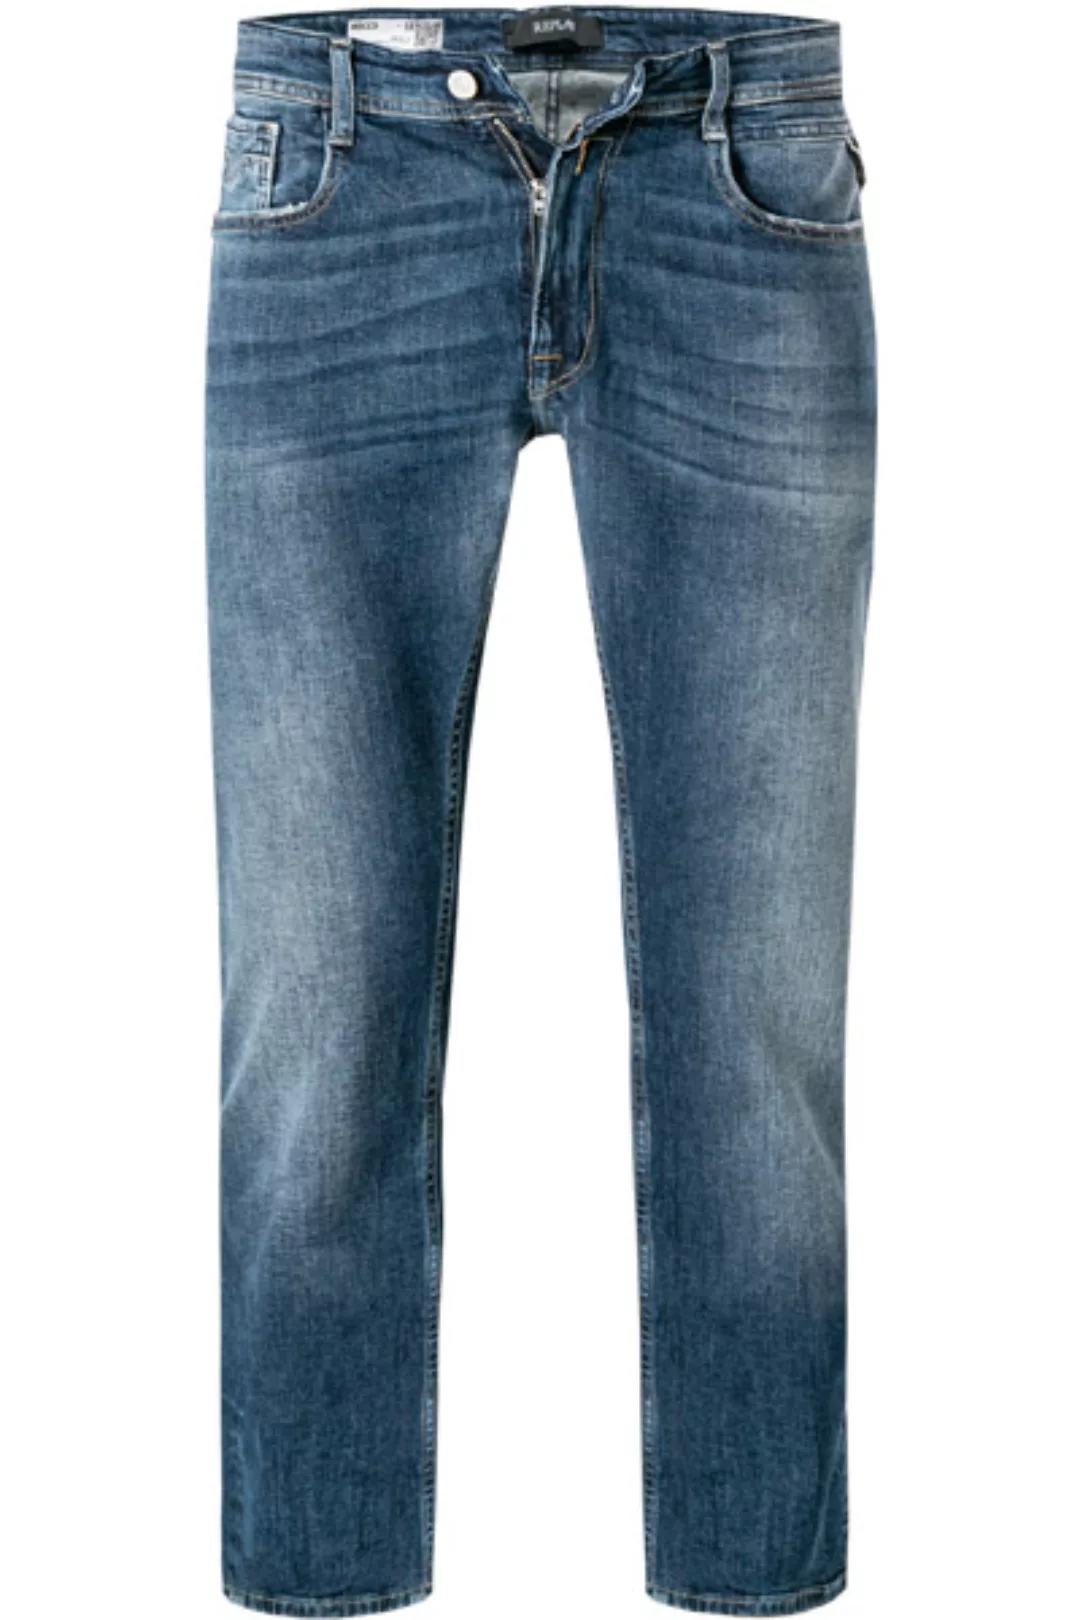 Replay Jeans Rocco M1005.000.573 946/009 günstig online kaufen